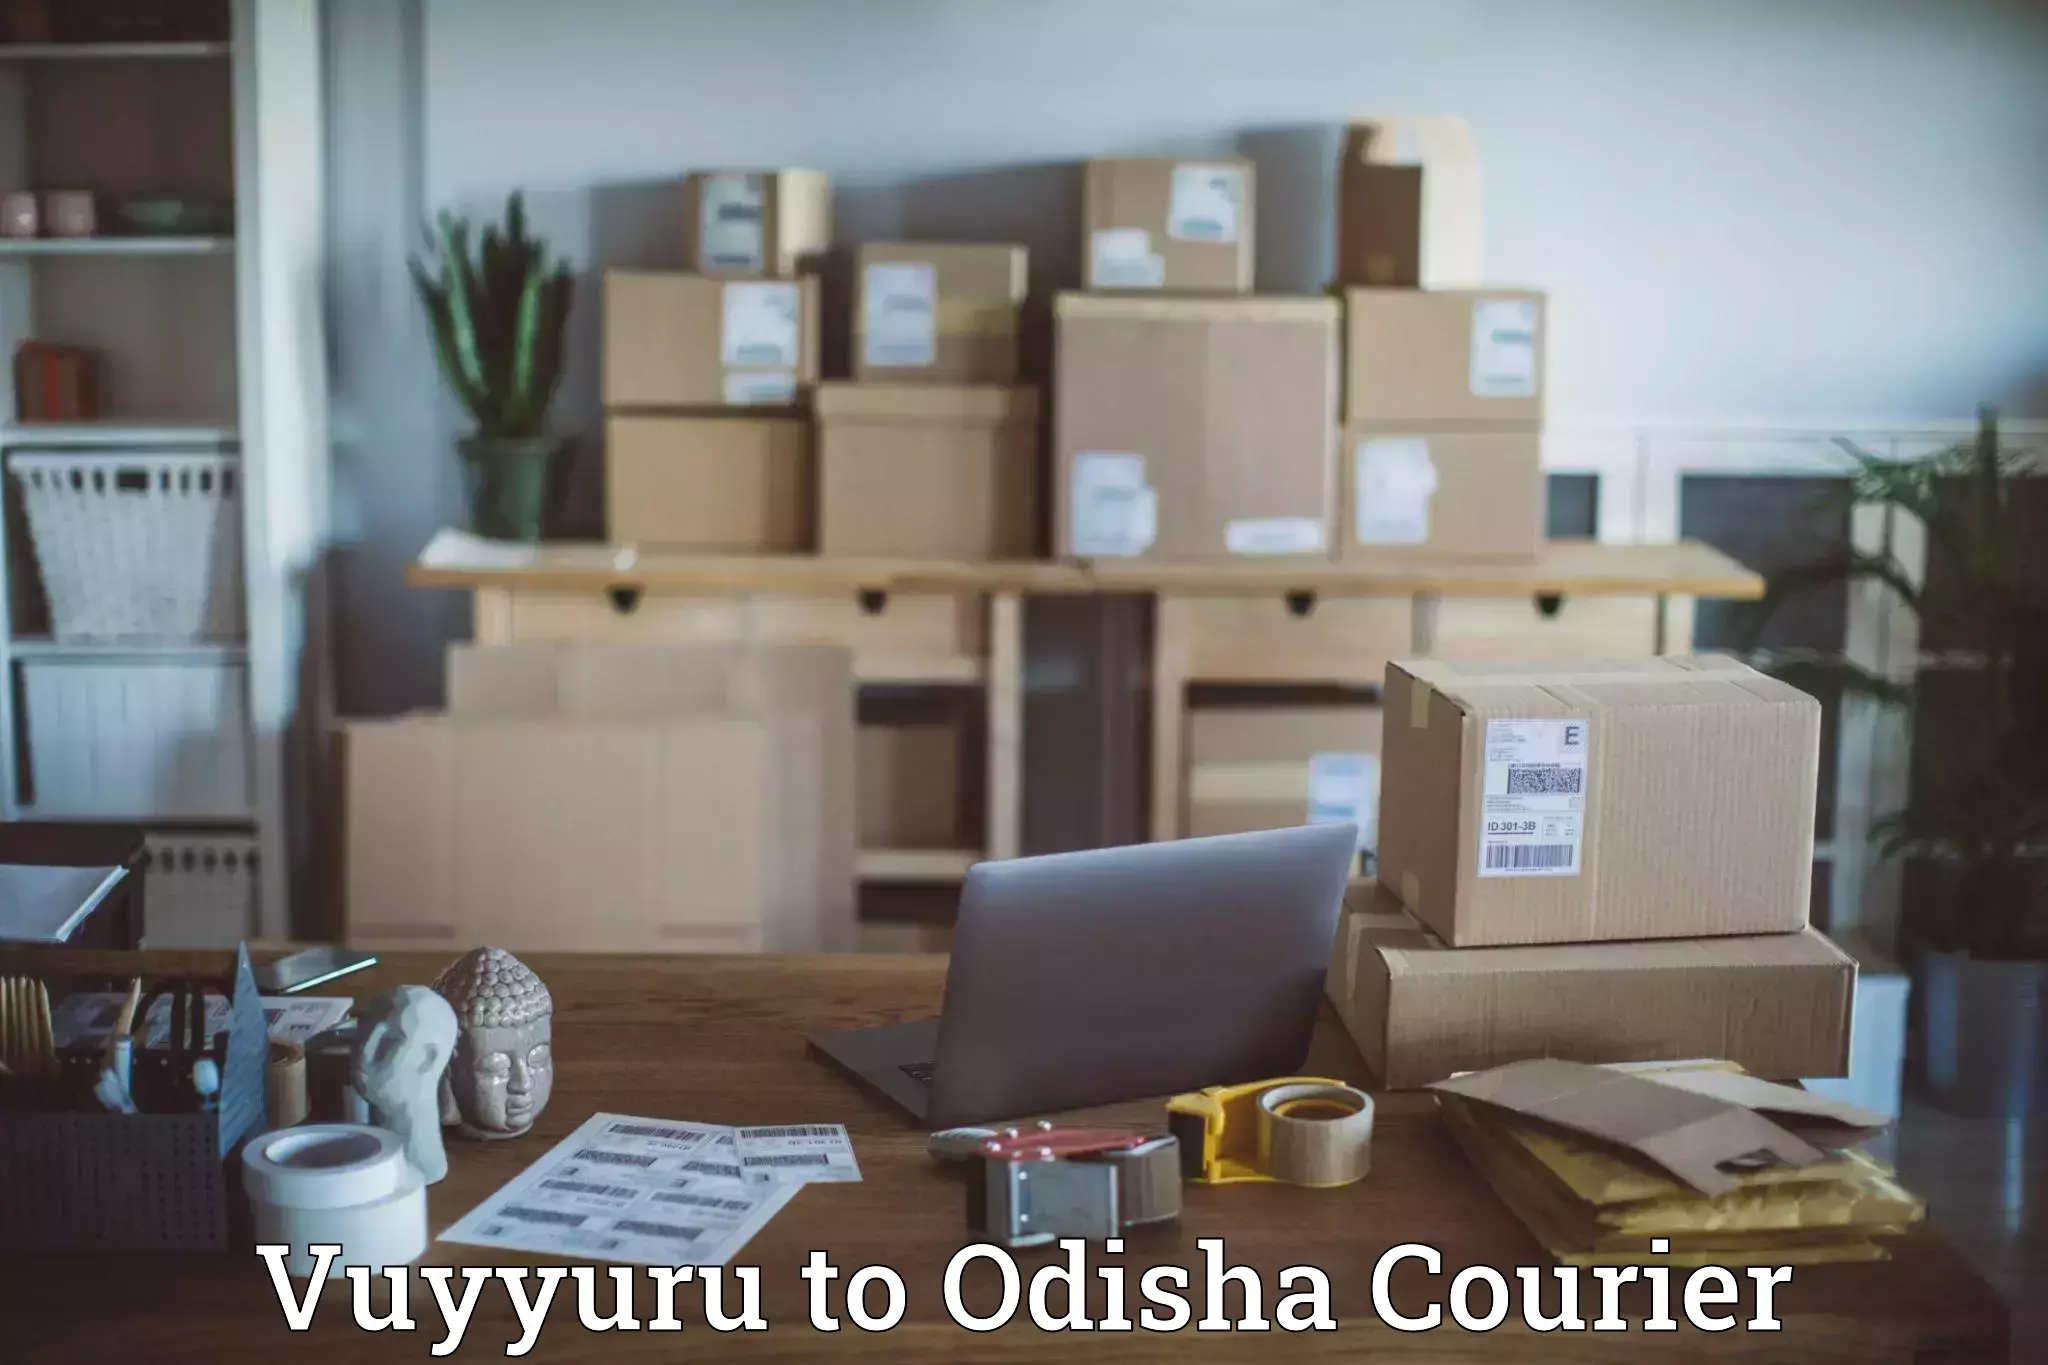 Tech-enabled shipping Vuyyuru to Karanjia